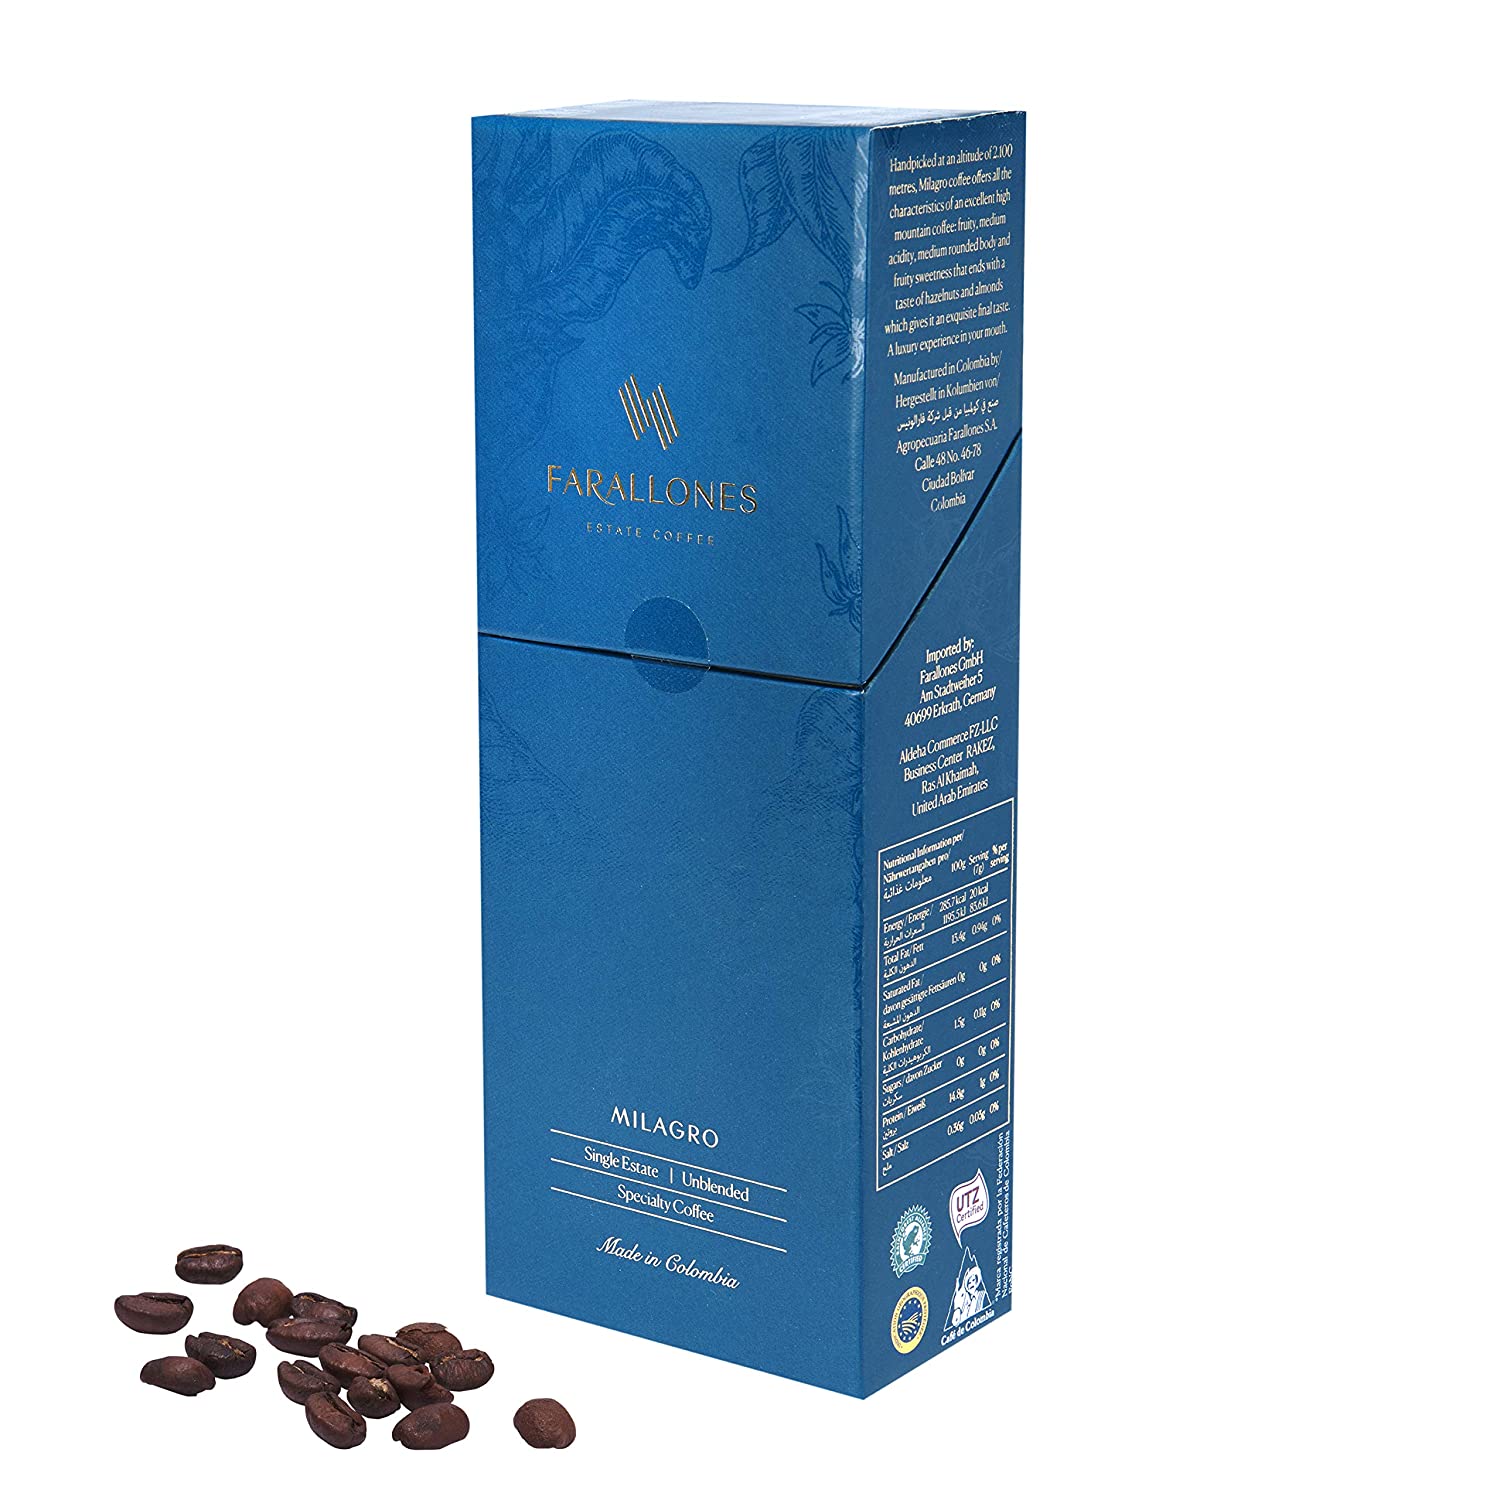 Farallones Estate Coffee, Premium Arabica Aromatische Ganze Kaffeebohnen aus Kolumbien, Milde Röstung, Stärke 3/5, 250g pack